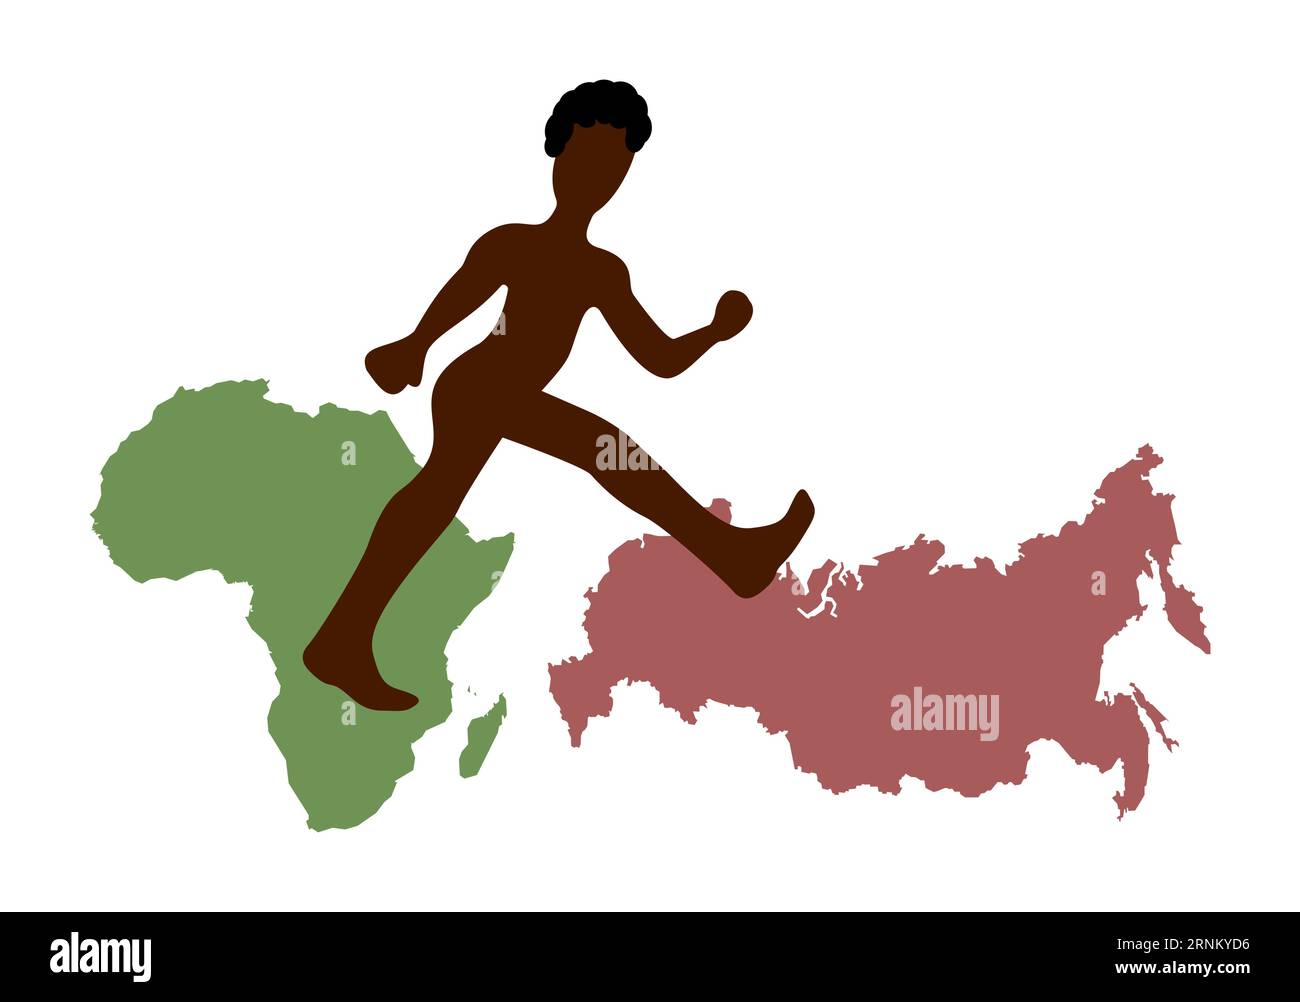 Afroamerikaner zu Fuß von Afrika nach Russland. Afroamerikanische Silhouette, Karte von Afrika, Karte von Russland. Stock Vektor